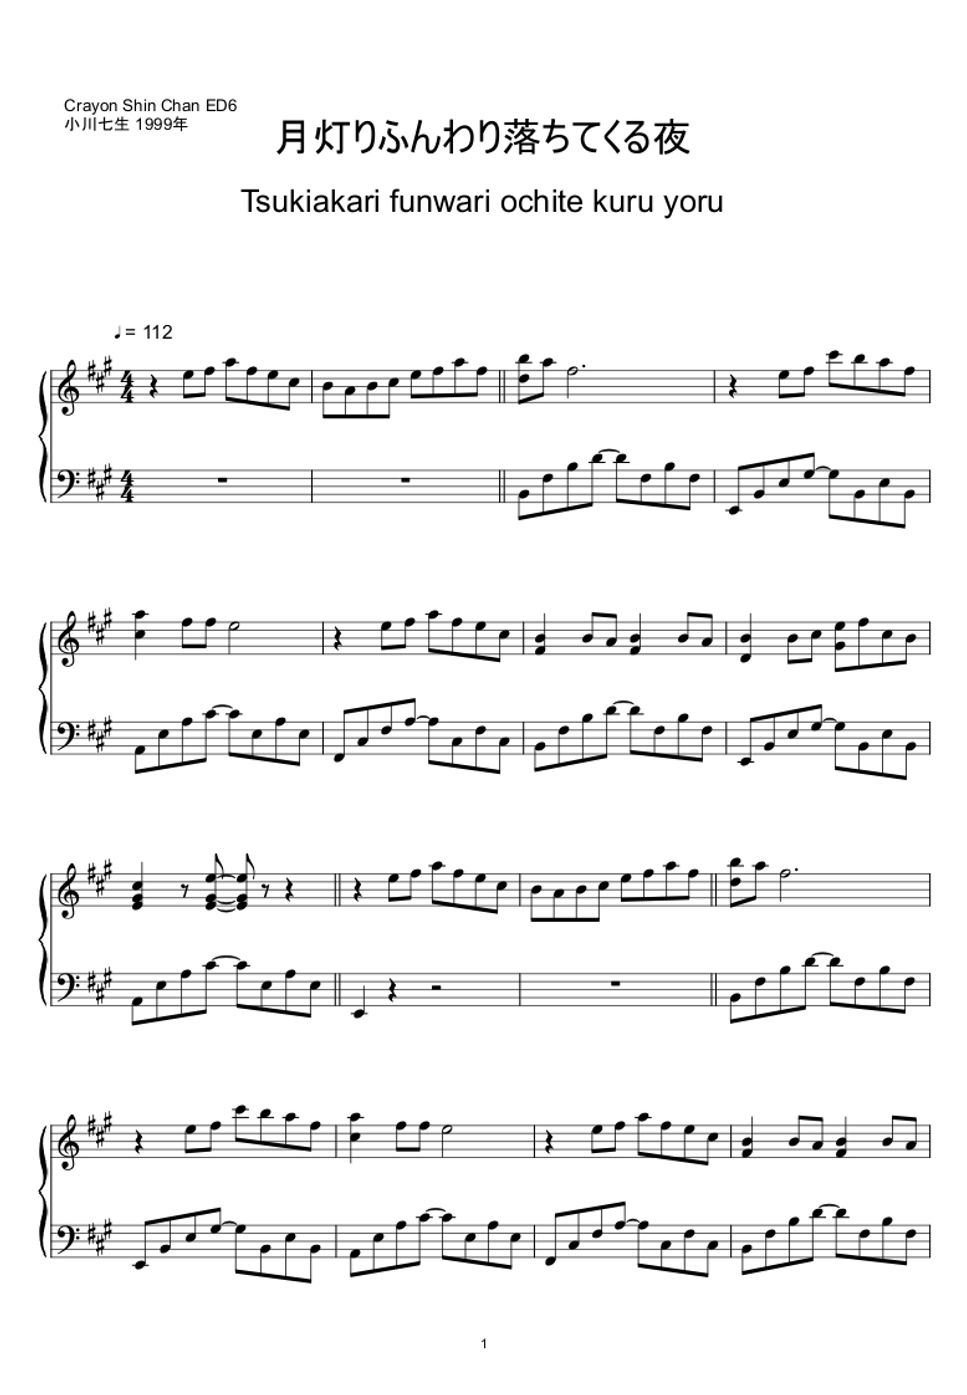 小川七生 - 月灯りふんわり落ちてくる夜 (クレヨンしんちゃん ED6) (楽譜, MIDI,) by sayu